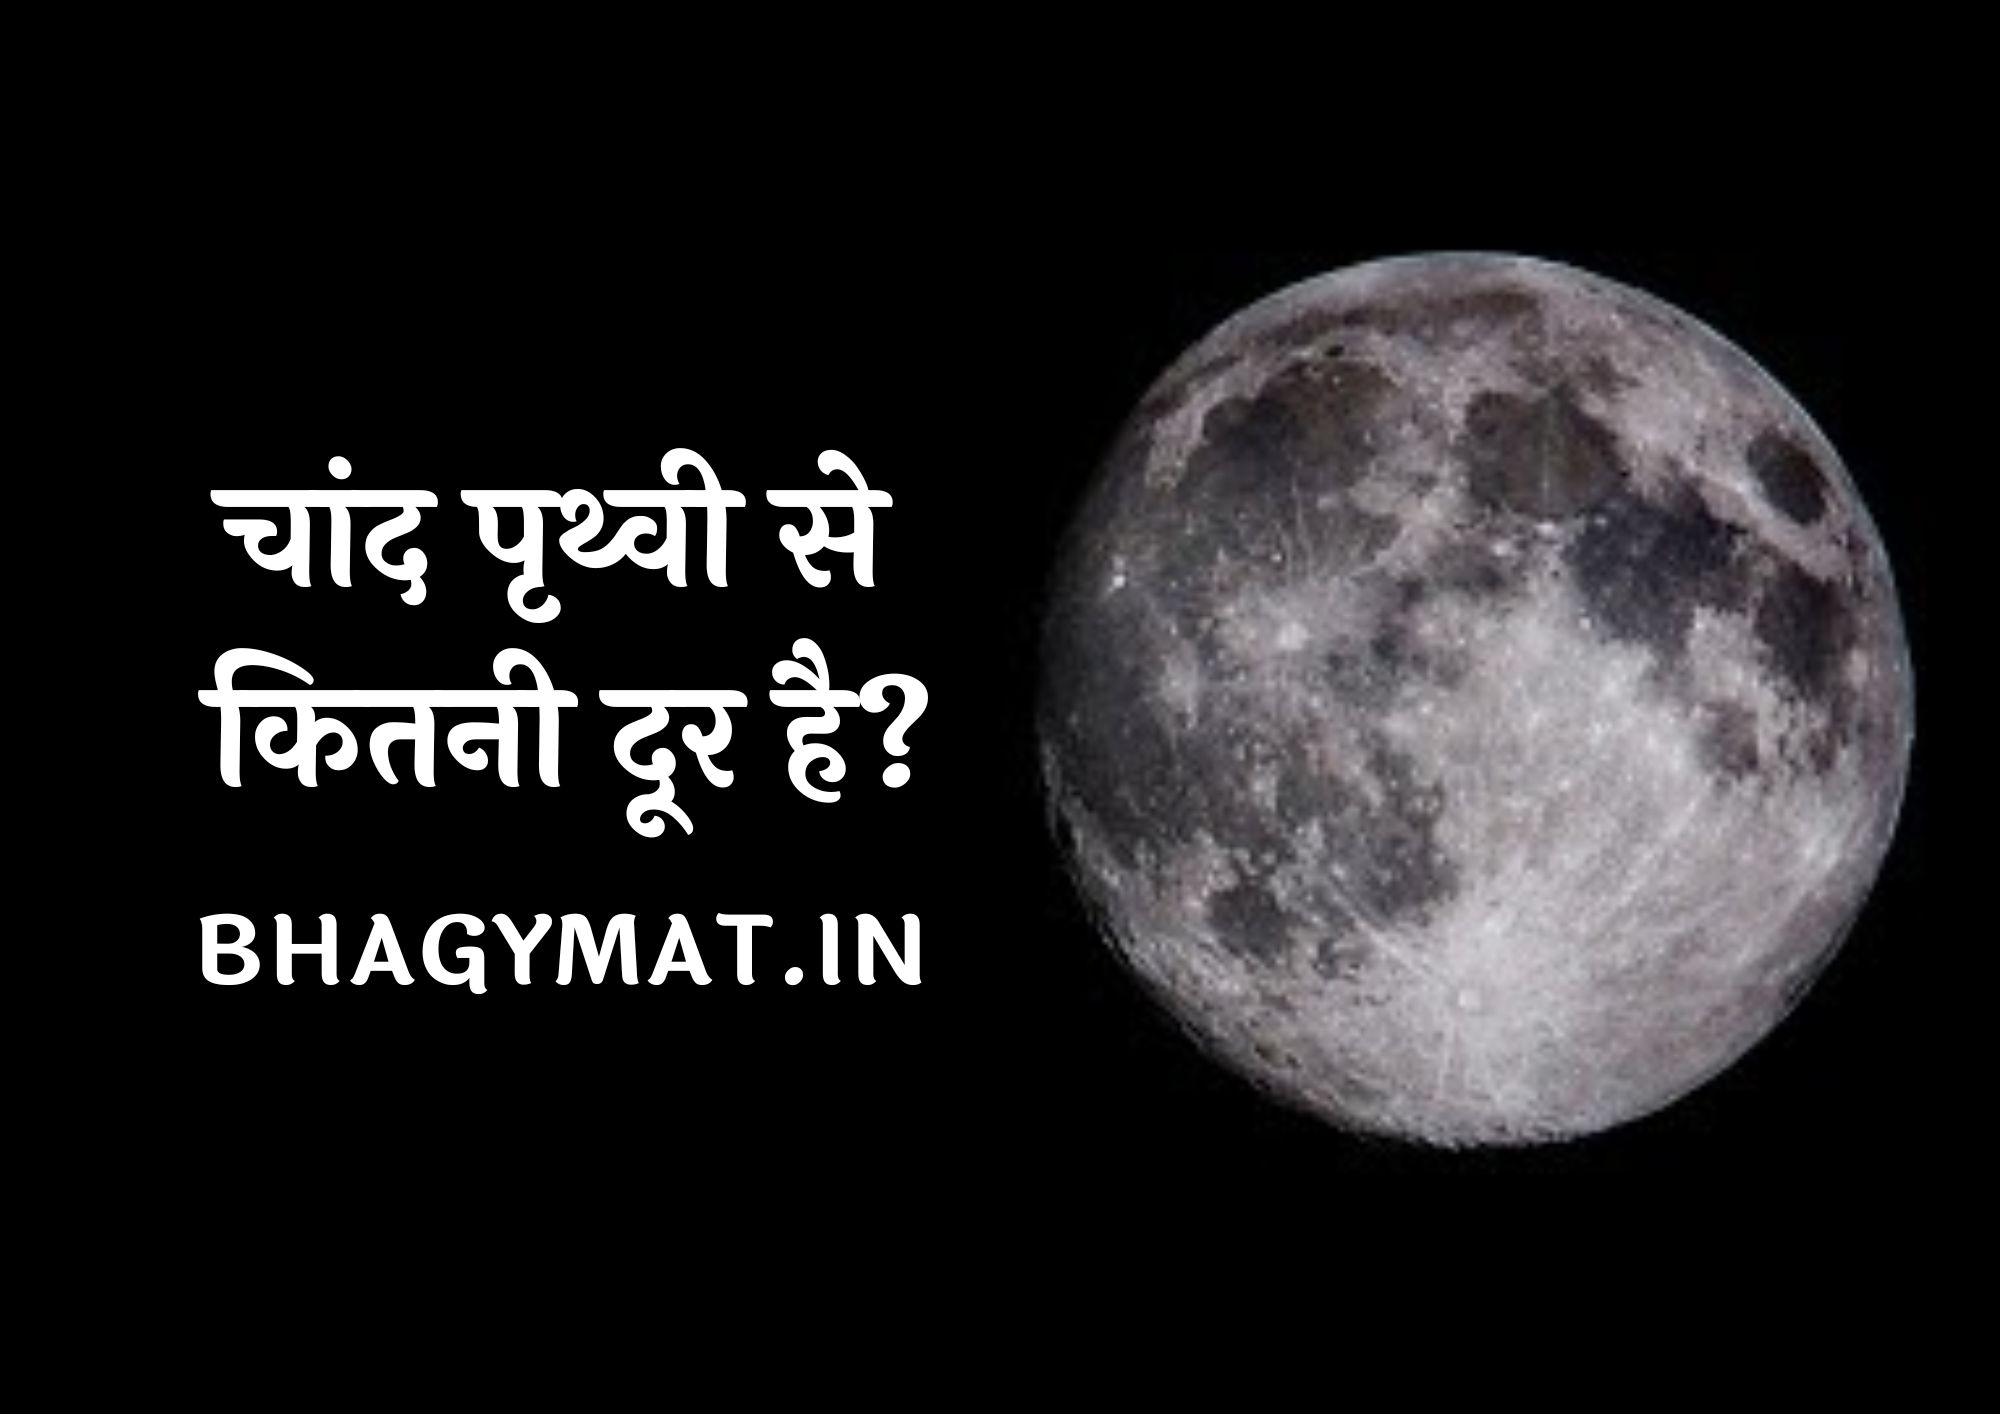 चांद पृथ्वी से कितनी दूर है, पृथ्वी से चांद कितनी दूर है - Chand Earth Se Kitna Dur Hai | Chand Prithvi Se Kitna Dur Hai